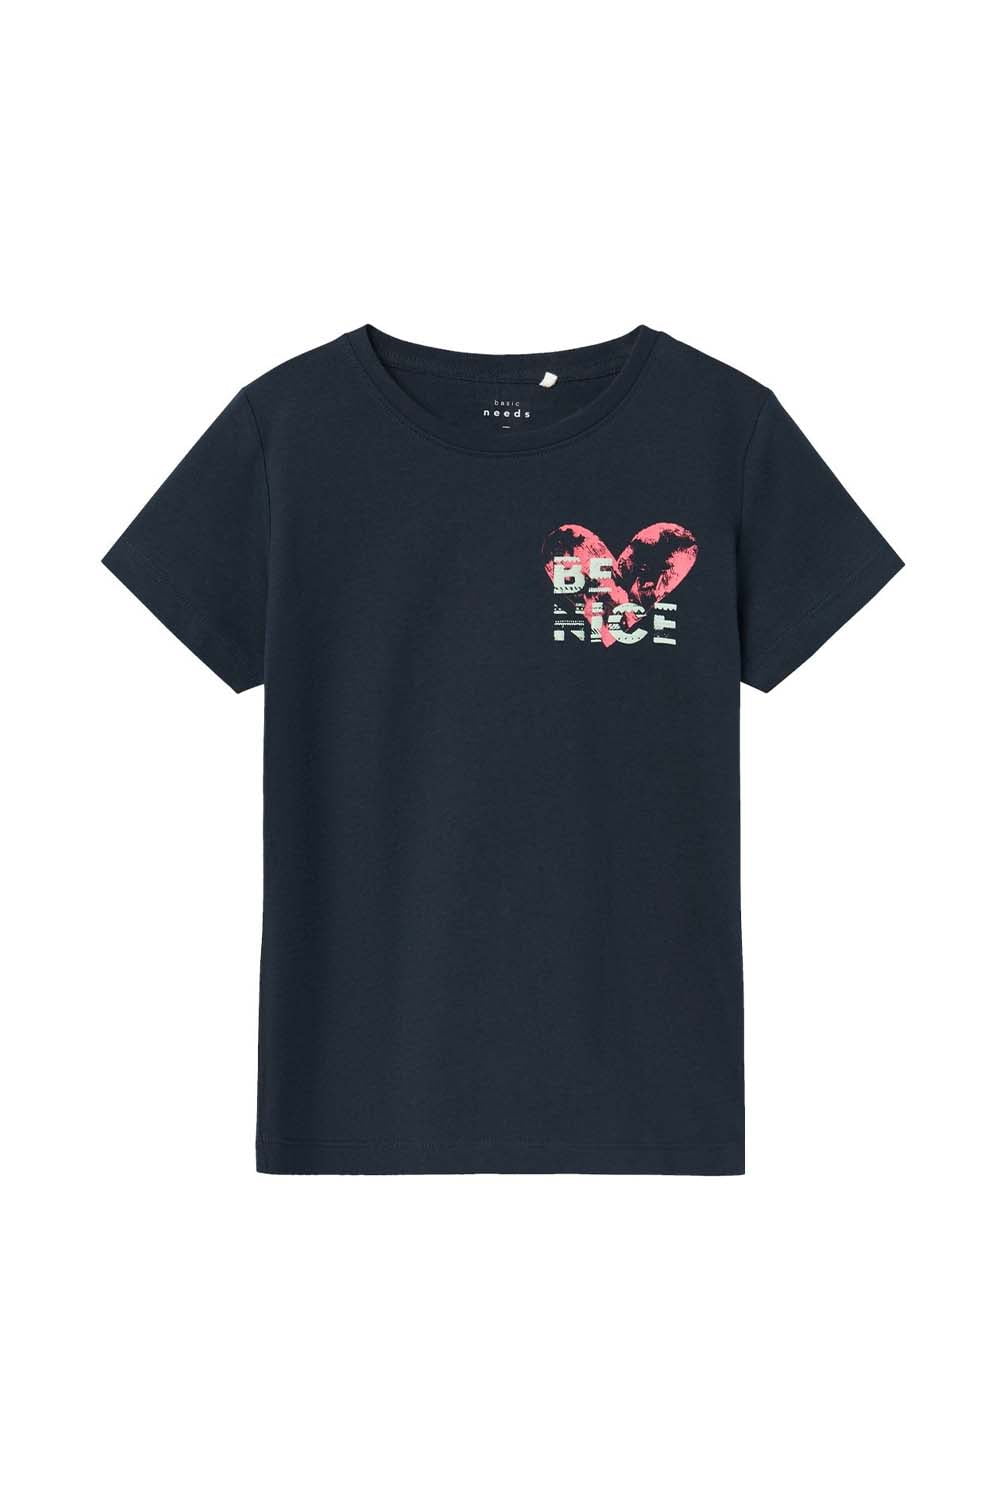 Παιδική Μπλούζα Βαμβακερή Για Κορίτσι NAME IT 13227462-DarkSapphire Navy